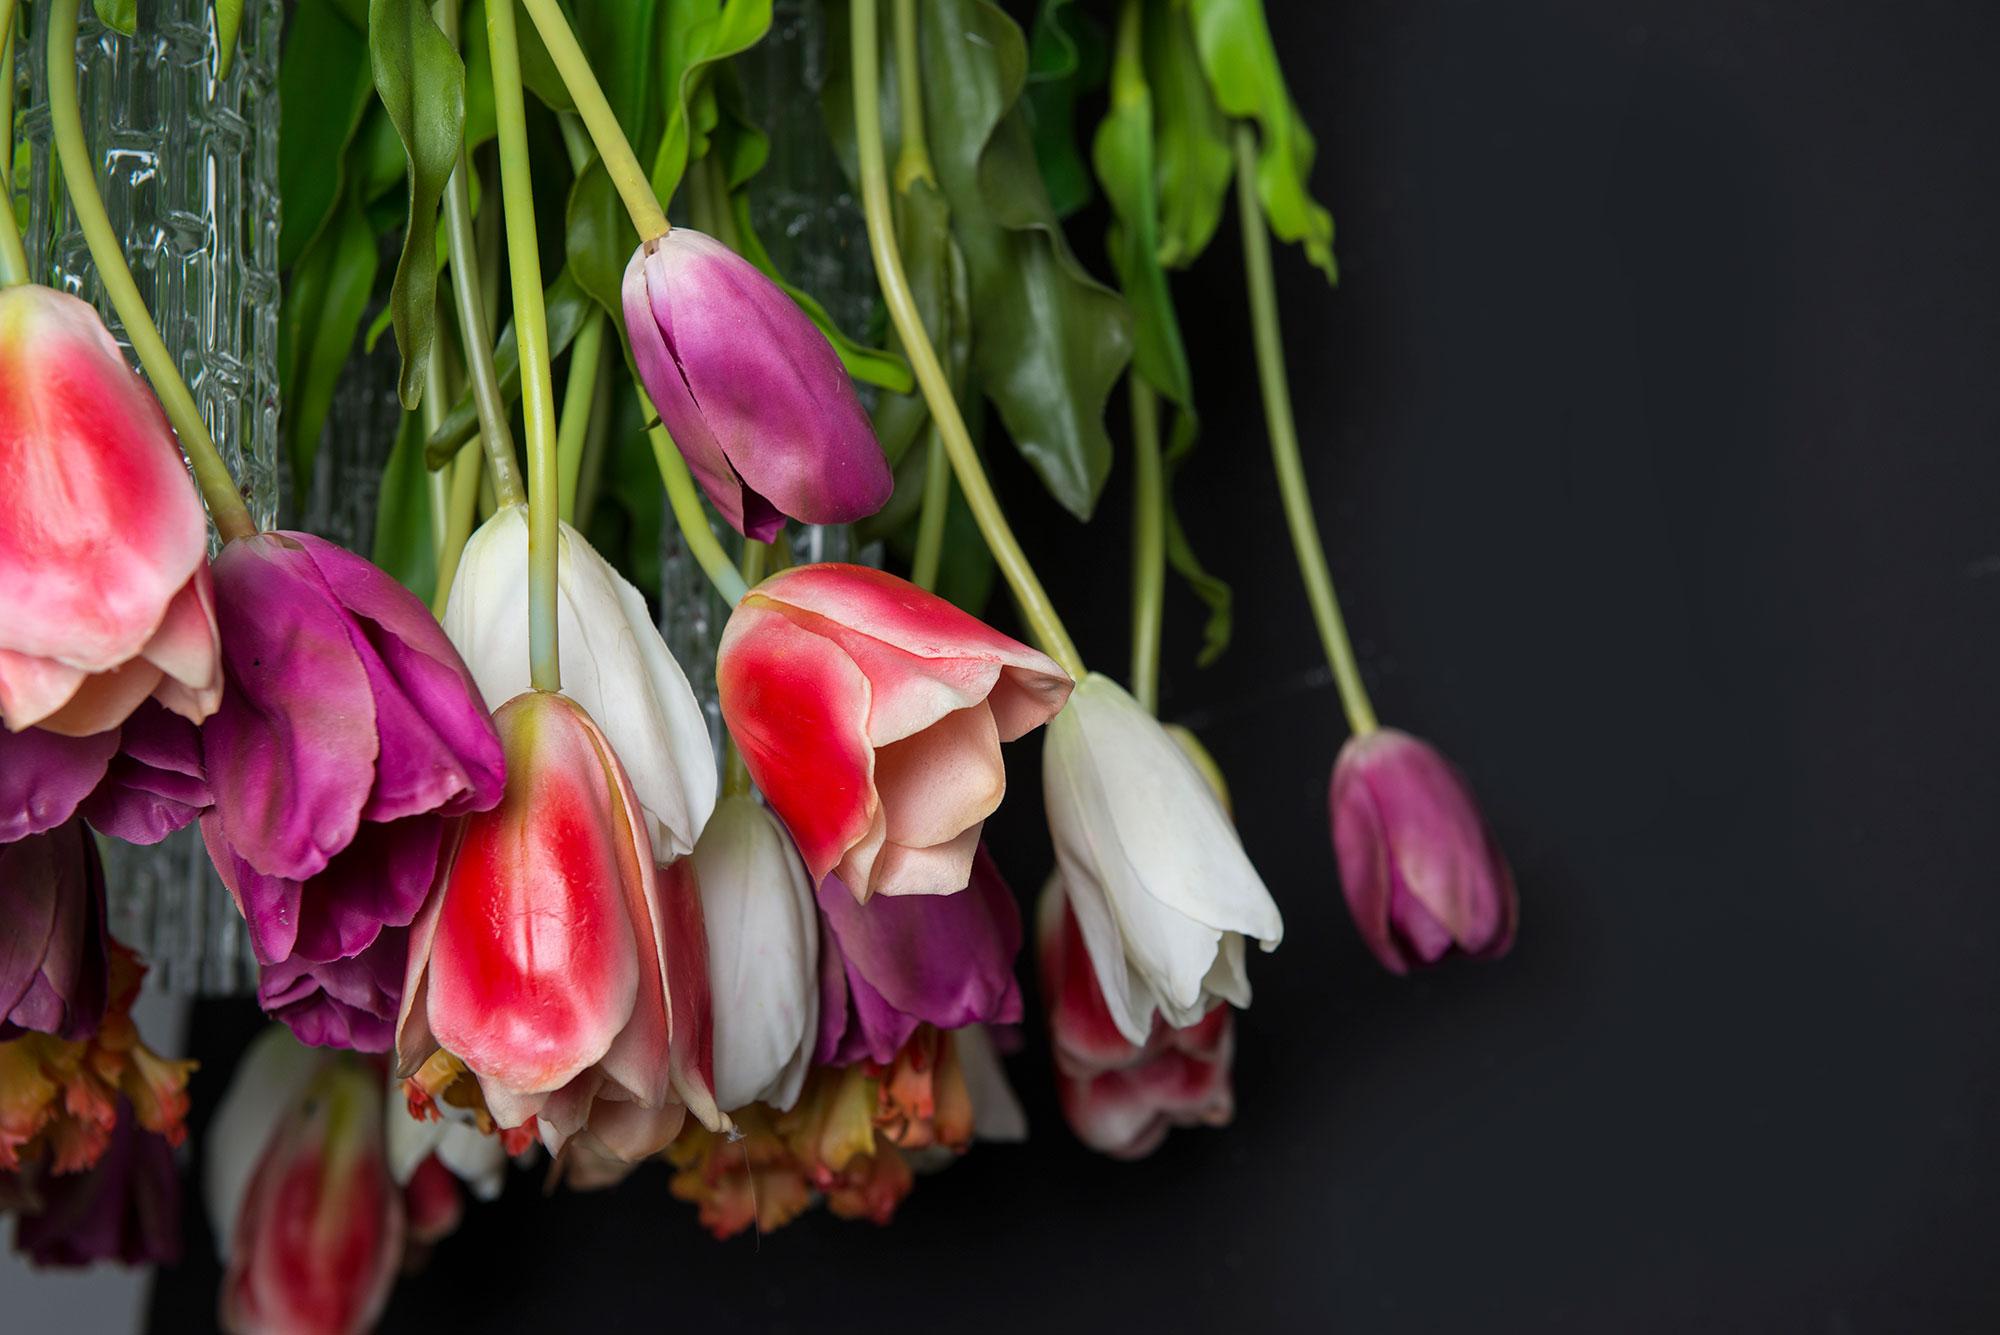 Flower Power ist eine Ode an den Frühling, ein bezauberndes Erwachen der Natur mit leuchtenden Farben und zarten Nuancen.
Flower Power ist ein Triumph der Blumen, der einzigartige und bezaubernde Umgebungen auf eine wirklich originelle Weise